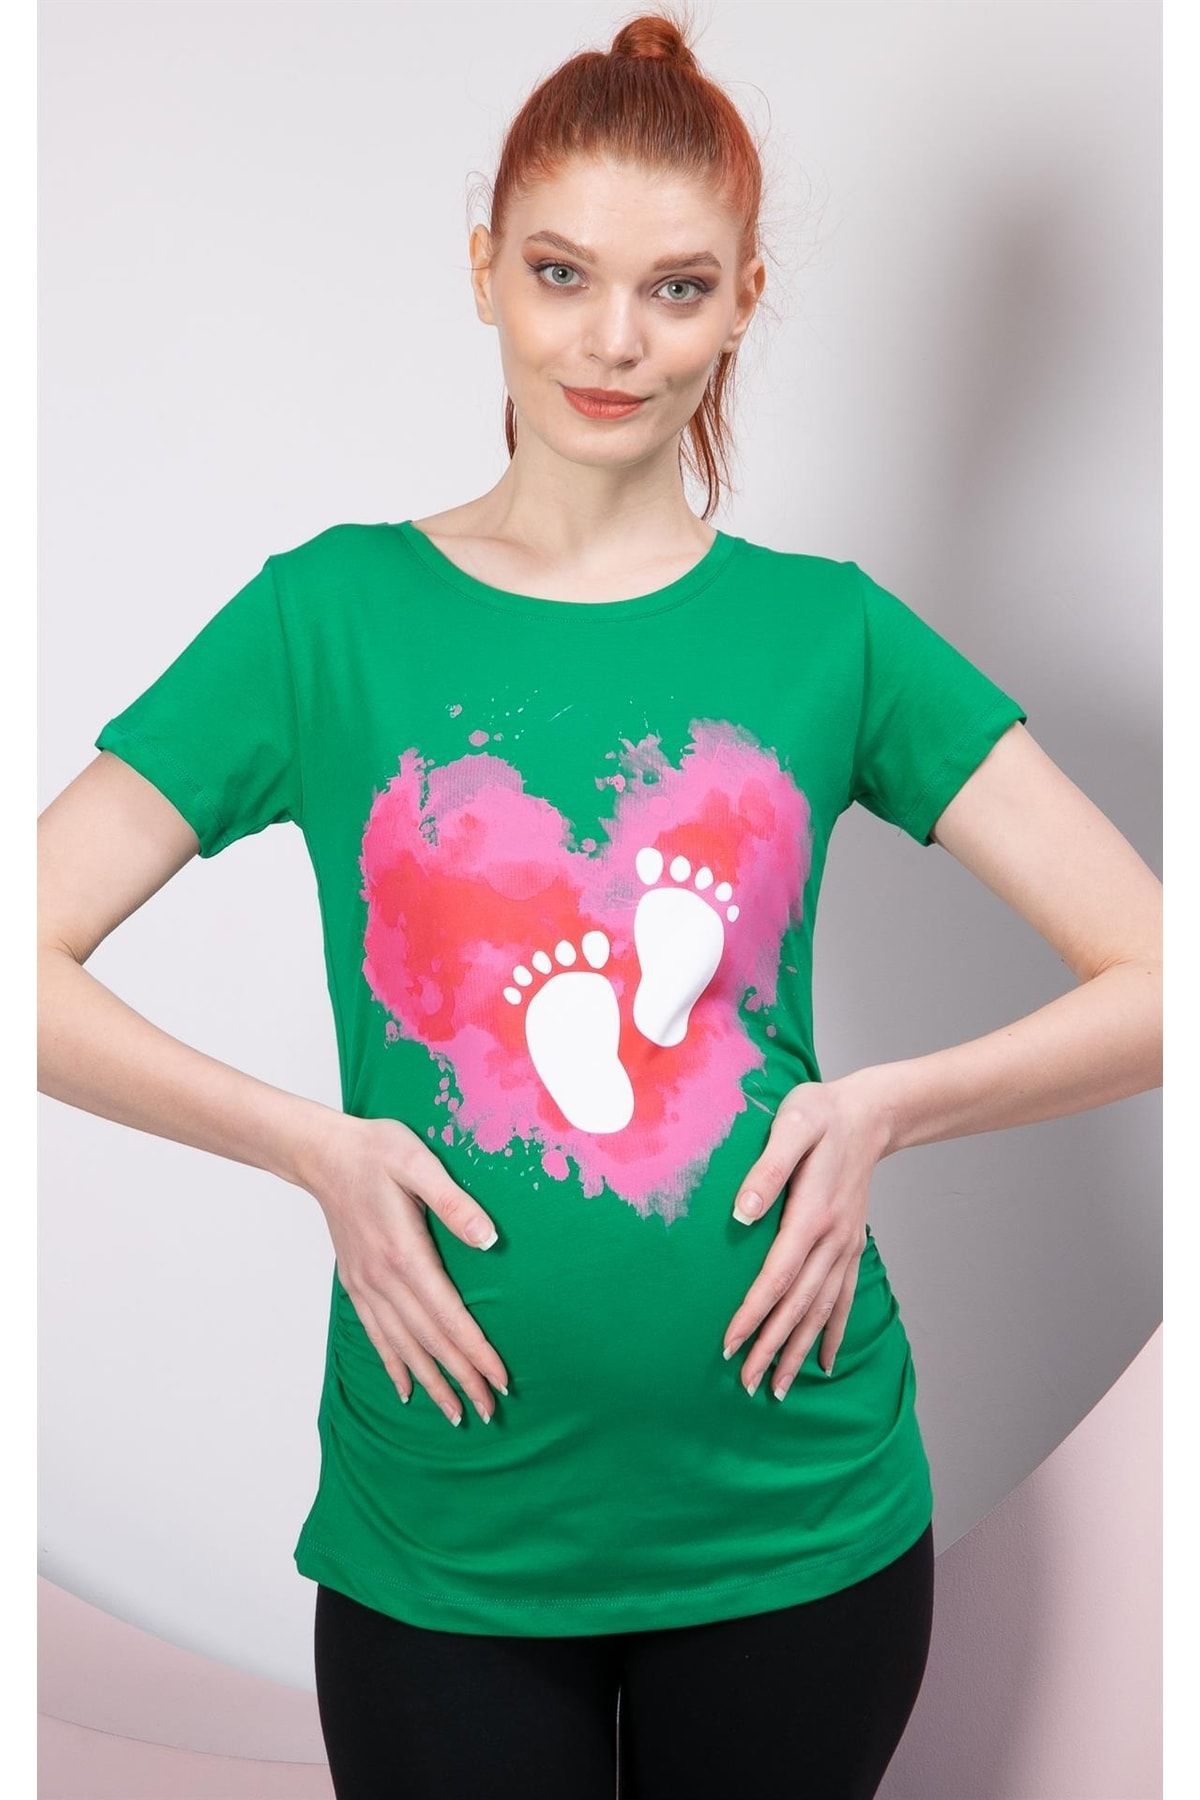 Görsin Hamile Gör&sin Kalp Üstü Ayak Izi Baskılı Yeşil Hamile Tişört